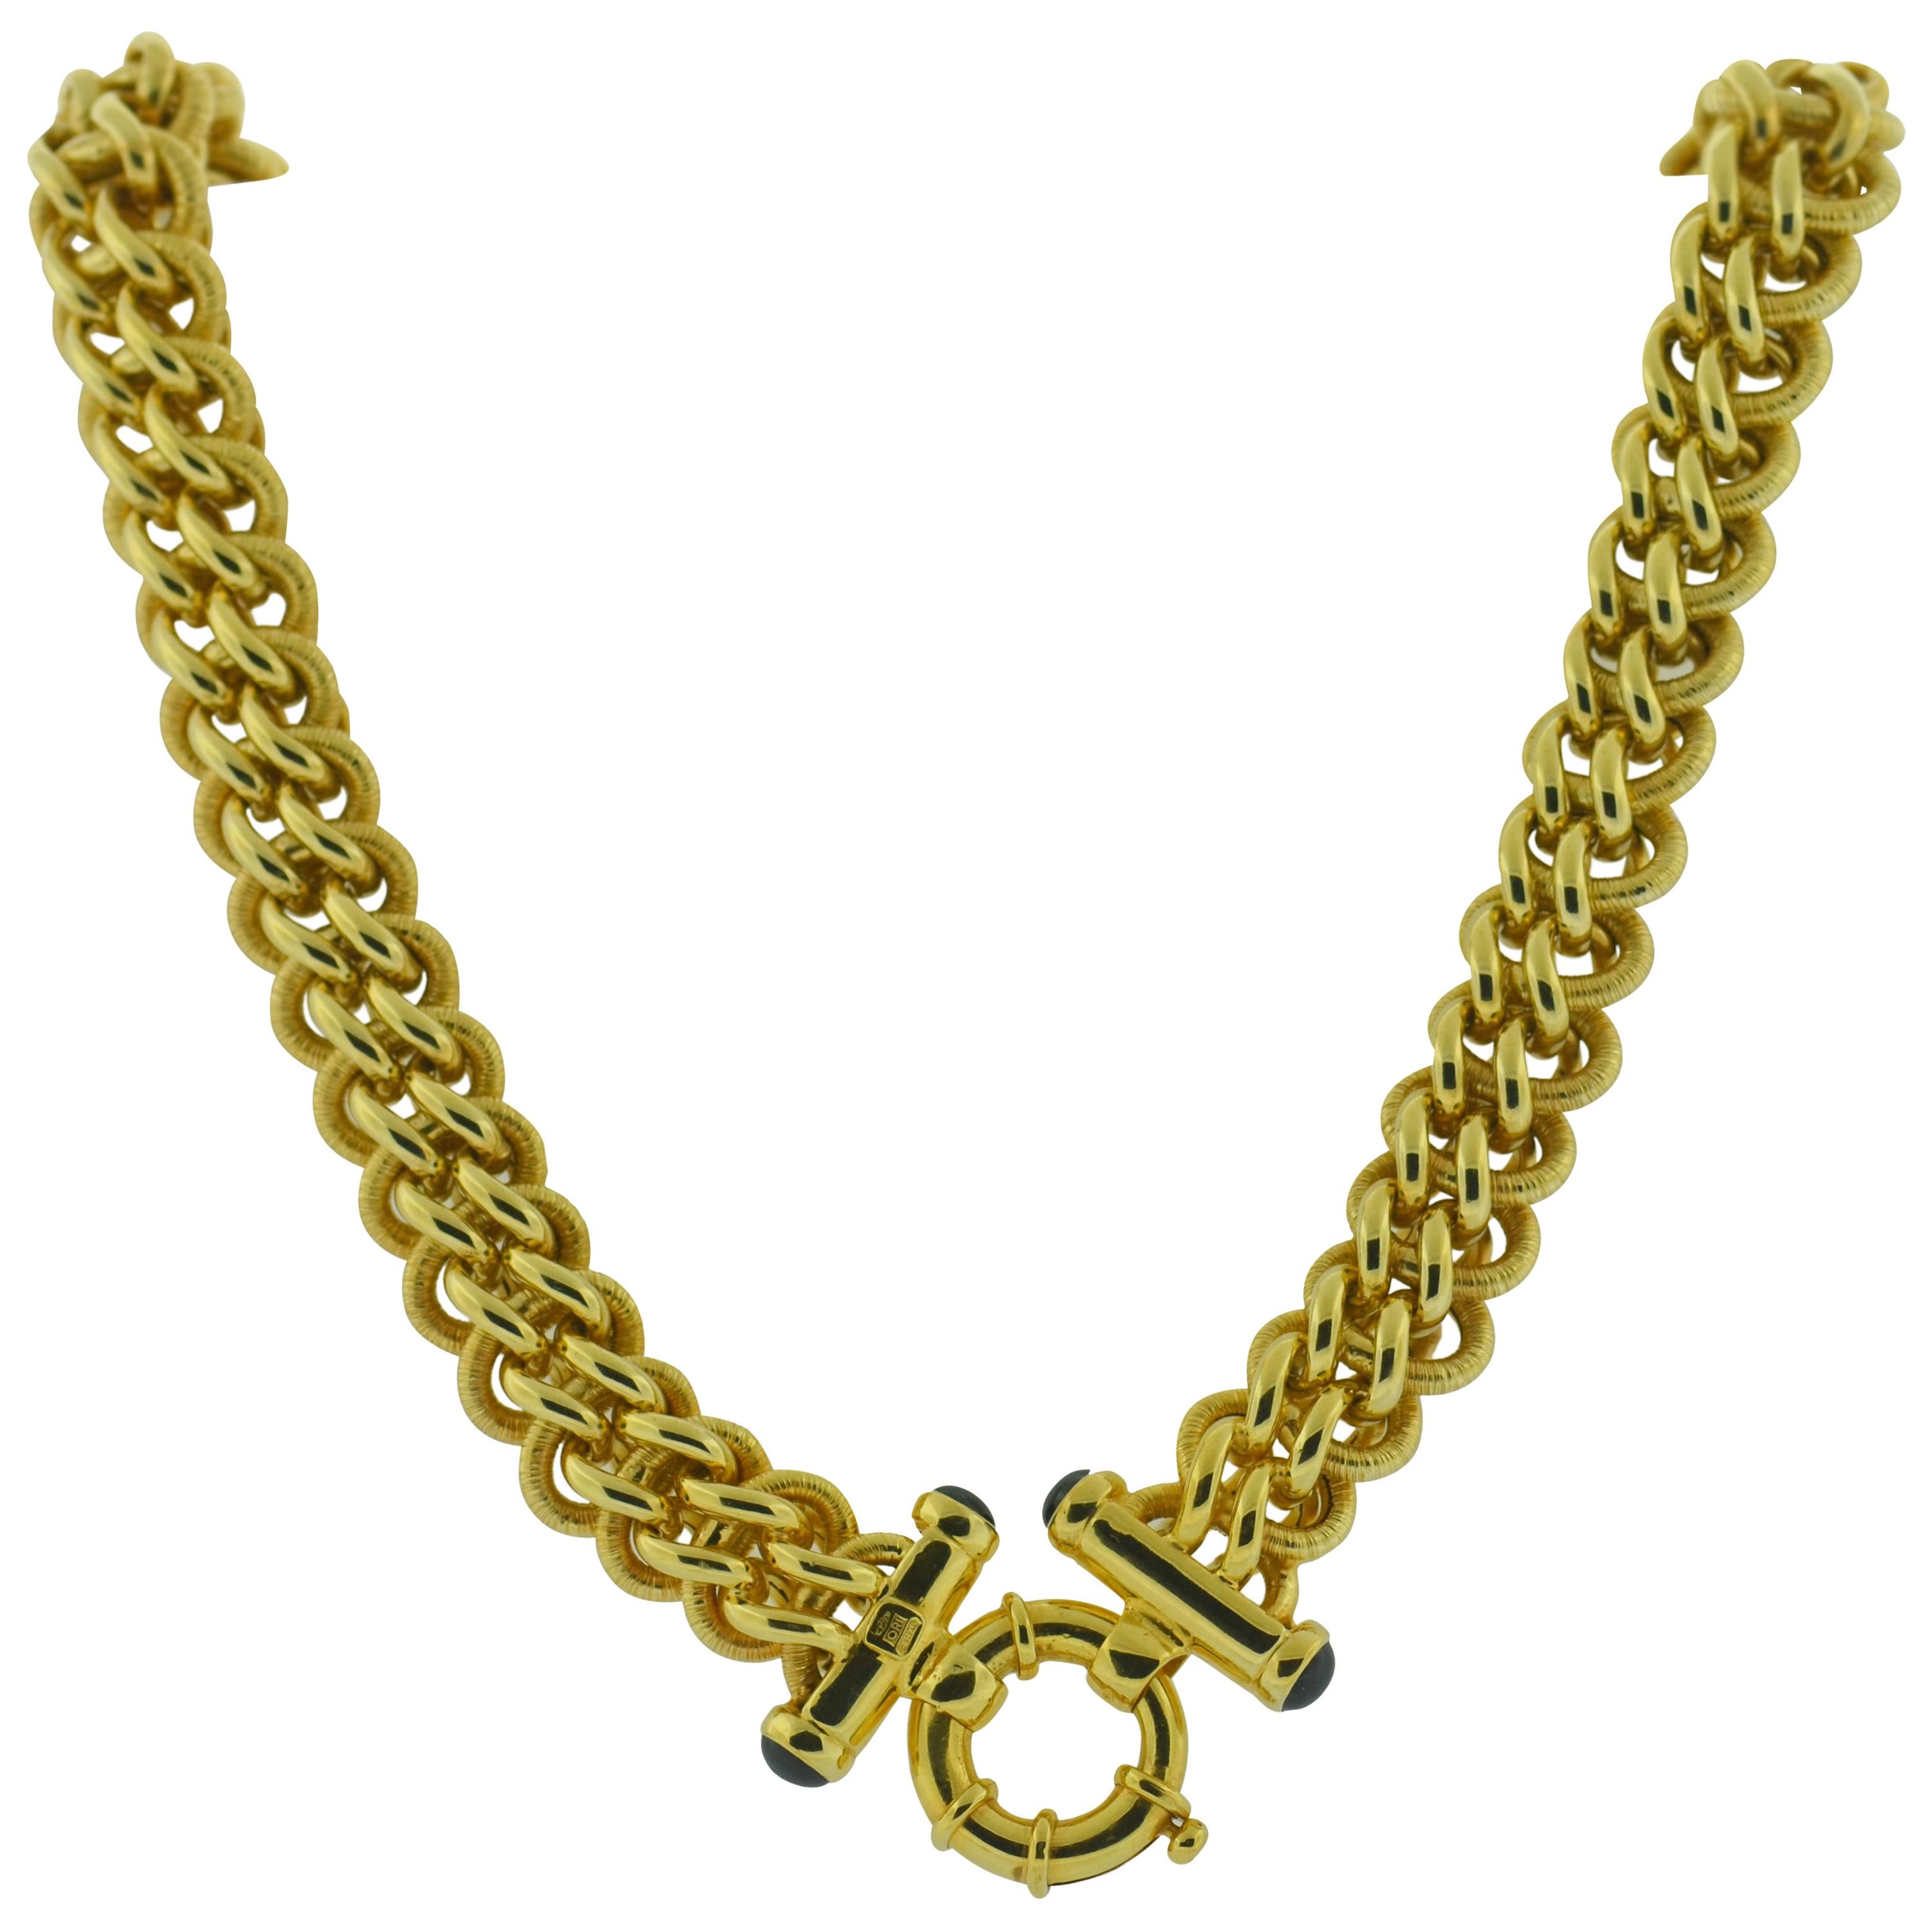 Italian Woven Chain Necklace 18 Karat 750, Italy